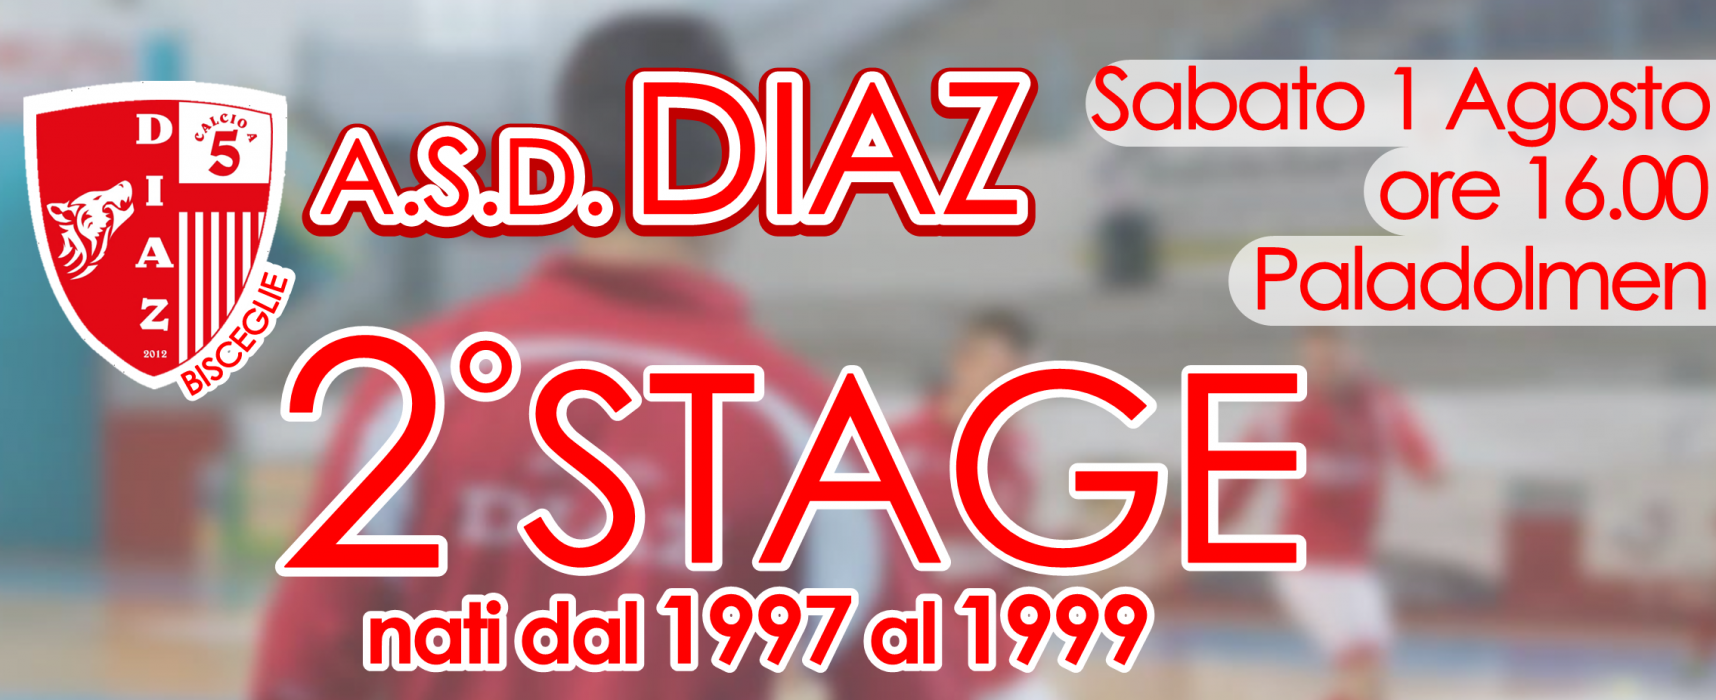 Sabato 1 agosto nuovo stage per la Diaz C5